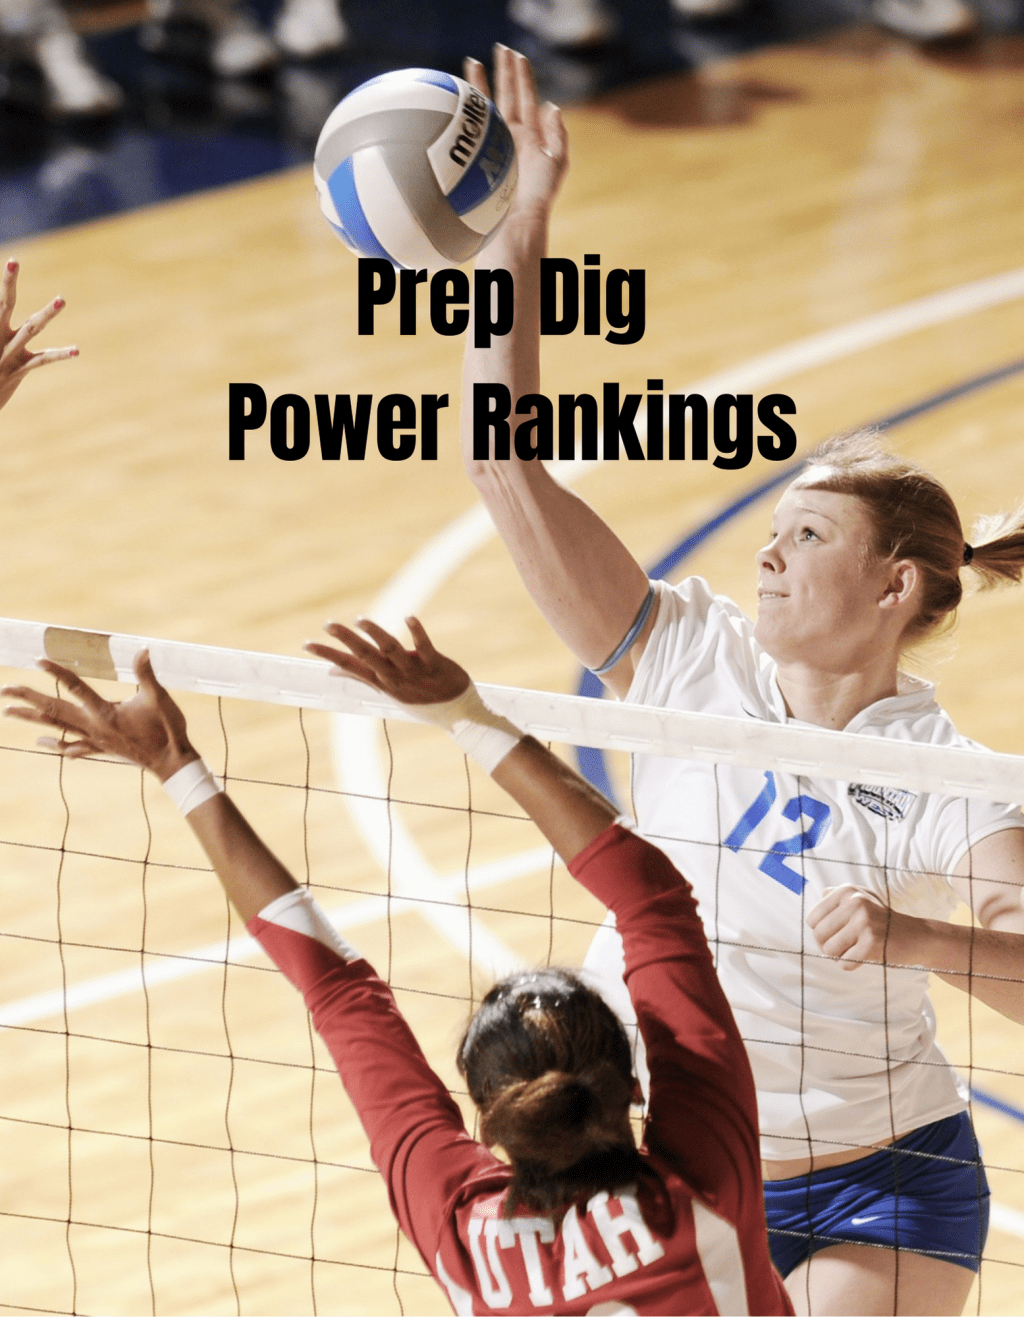 Prep Dig Power Rankings